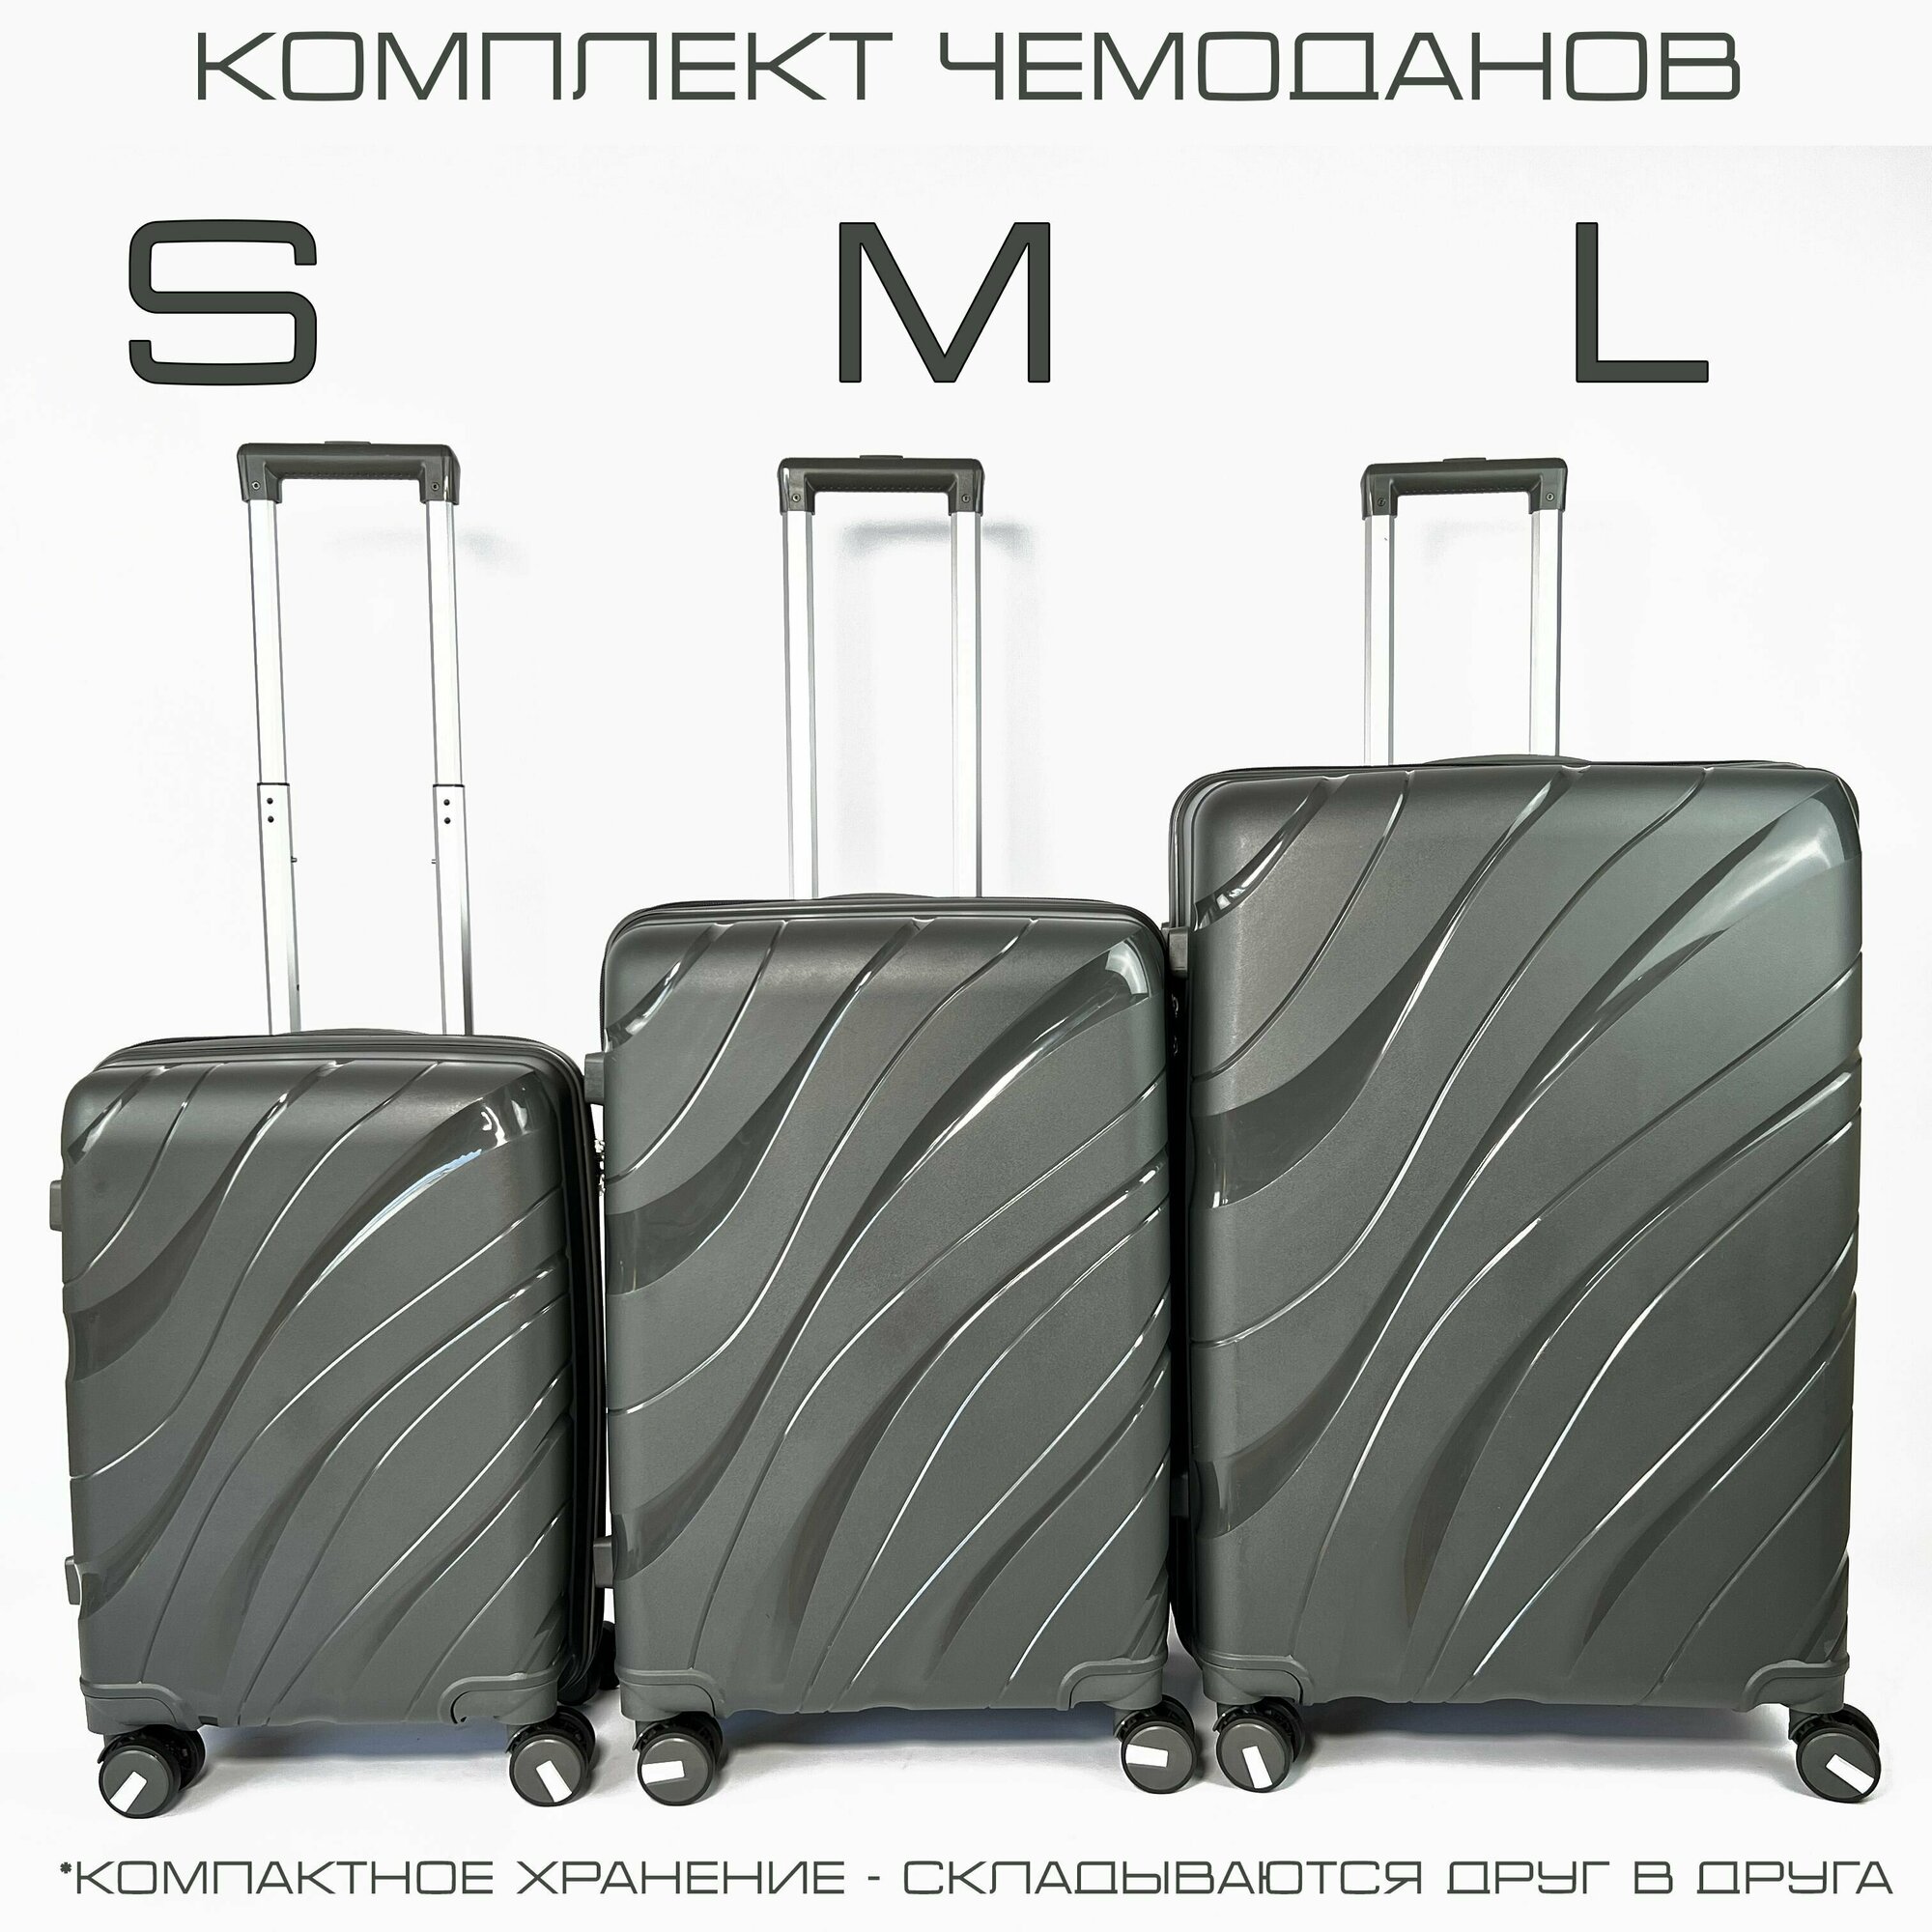 Комплект чемоданов KONGUNLA, 3 шт.